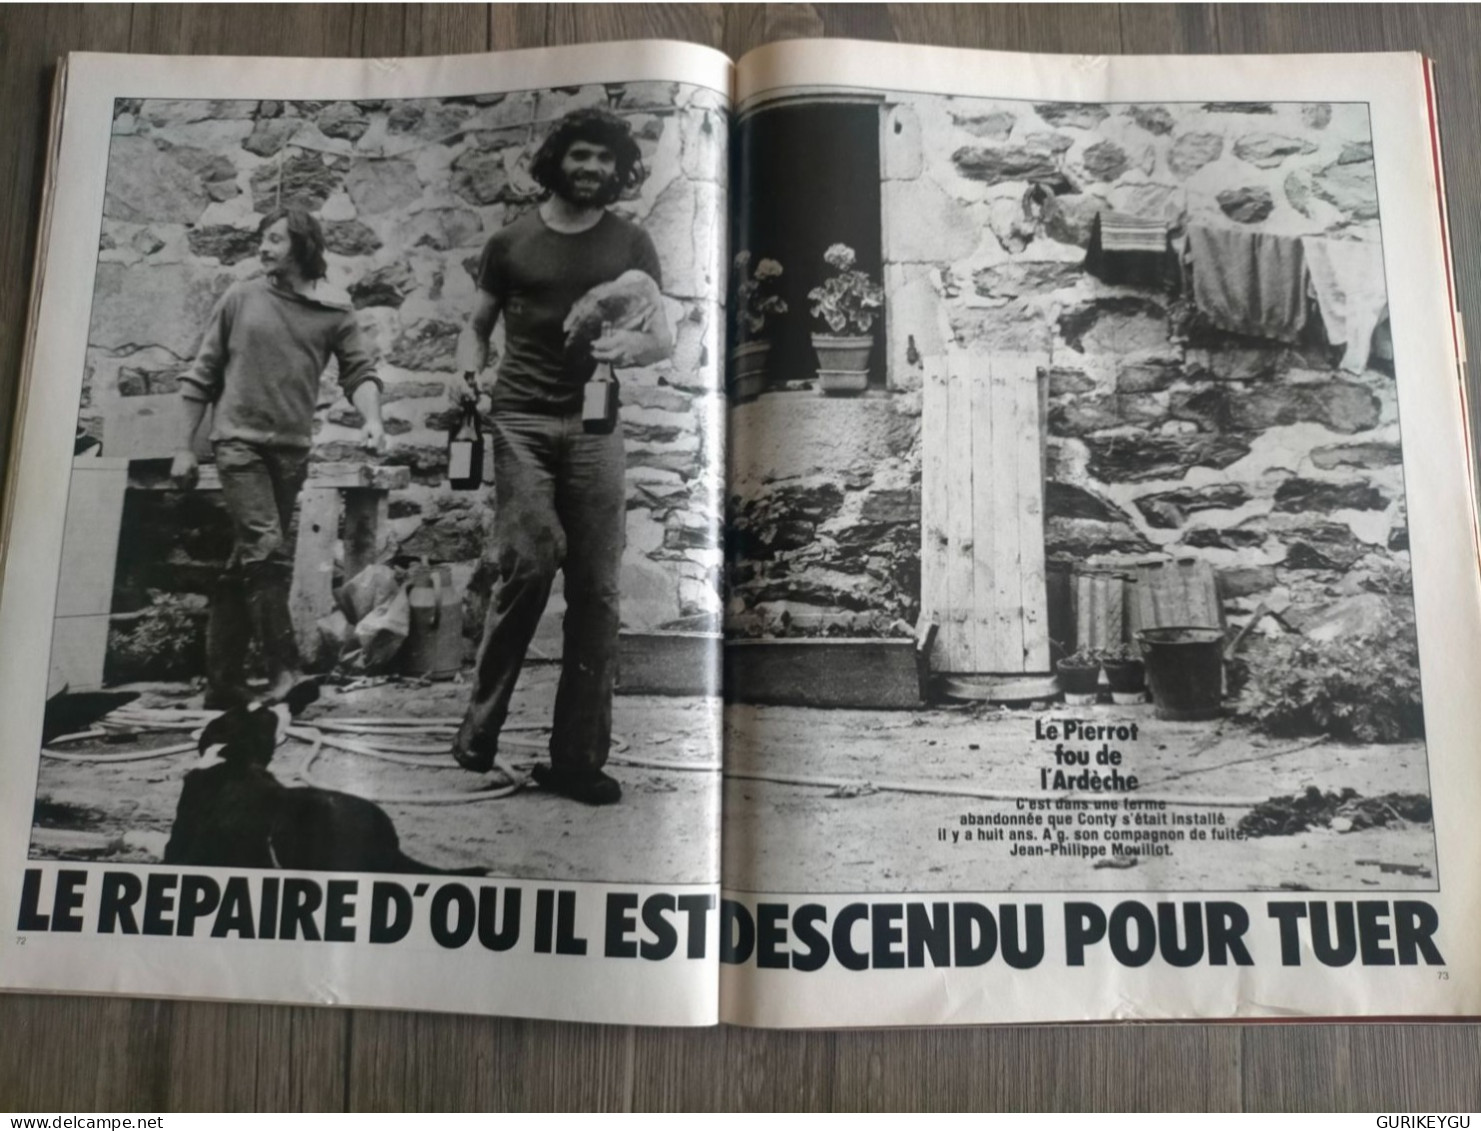 PARIS MATCH n° 1478 John Wayne Jacques Brel 23/09/1977 CONTY le fou de l'Ardèche pierrot le fou